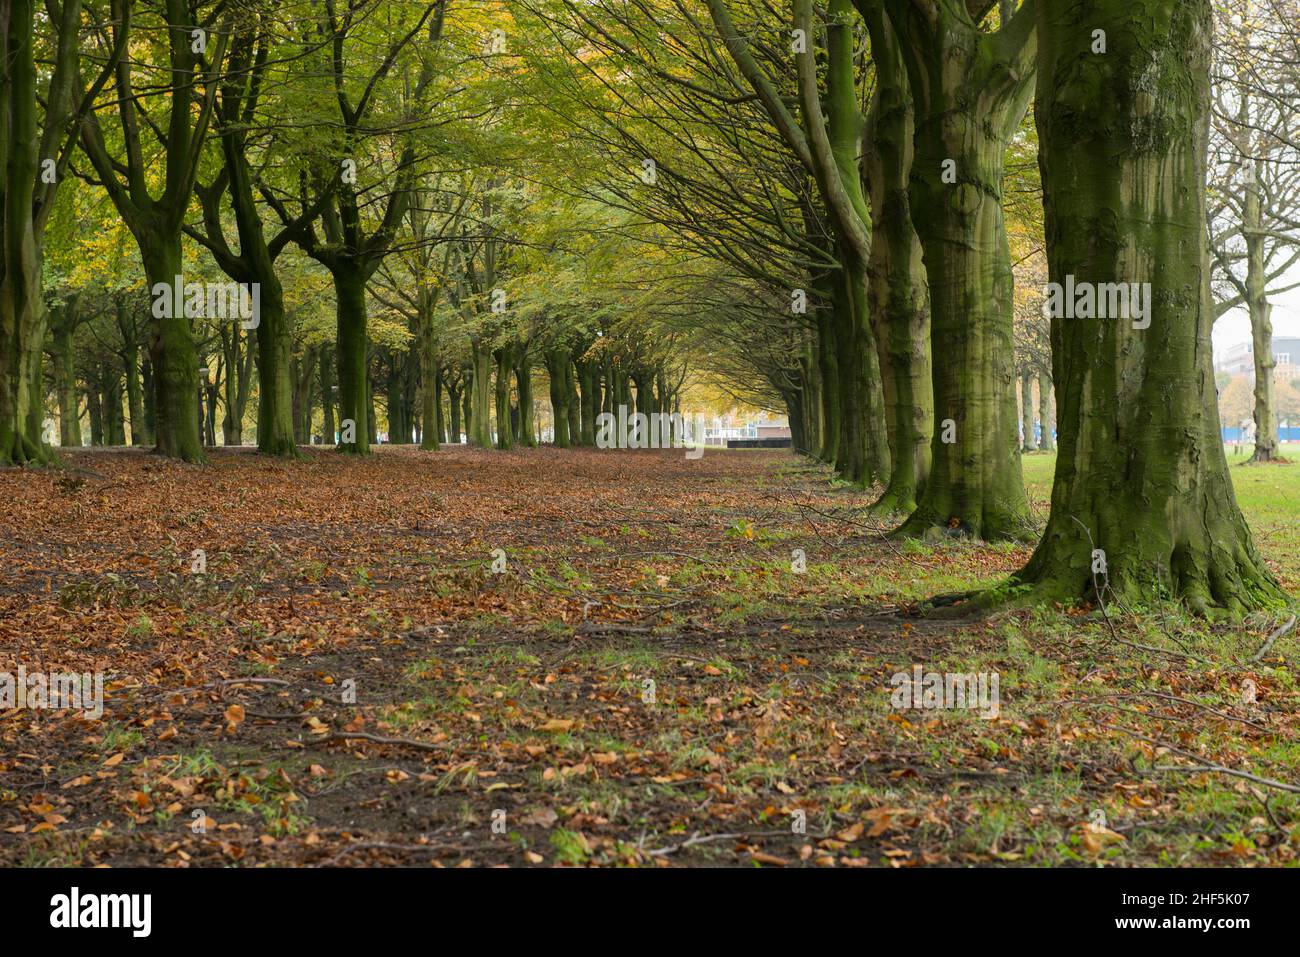 La Haya, Países Bajos. Una avenida con árboles antiguos, robles y hojas en los terrenos Forrest durante la temporada de otoño. Foto de stock